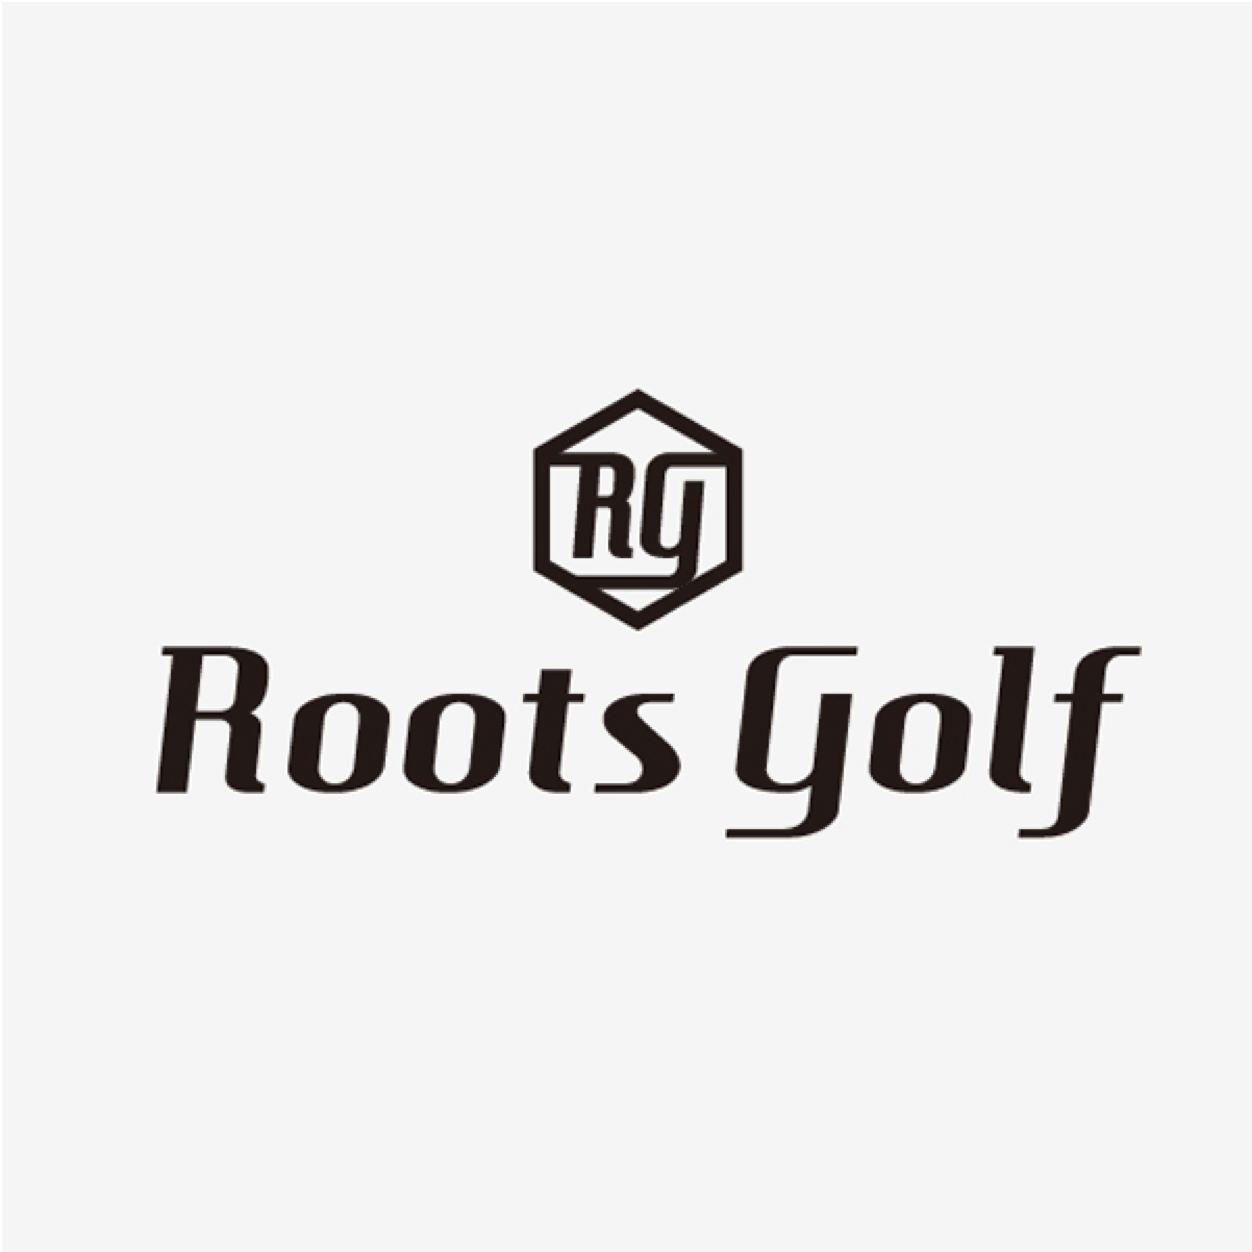 Roots Golf 小物用ロゴデザイン